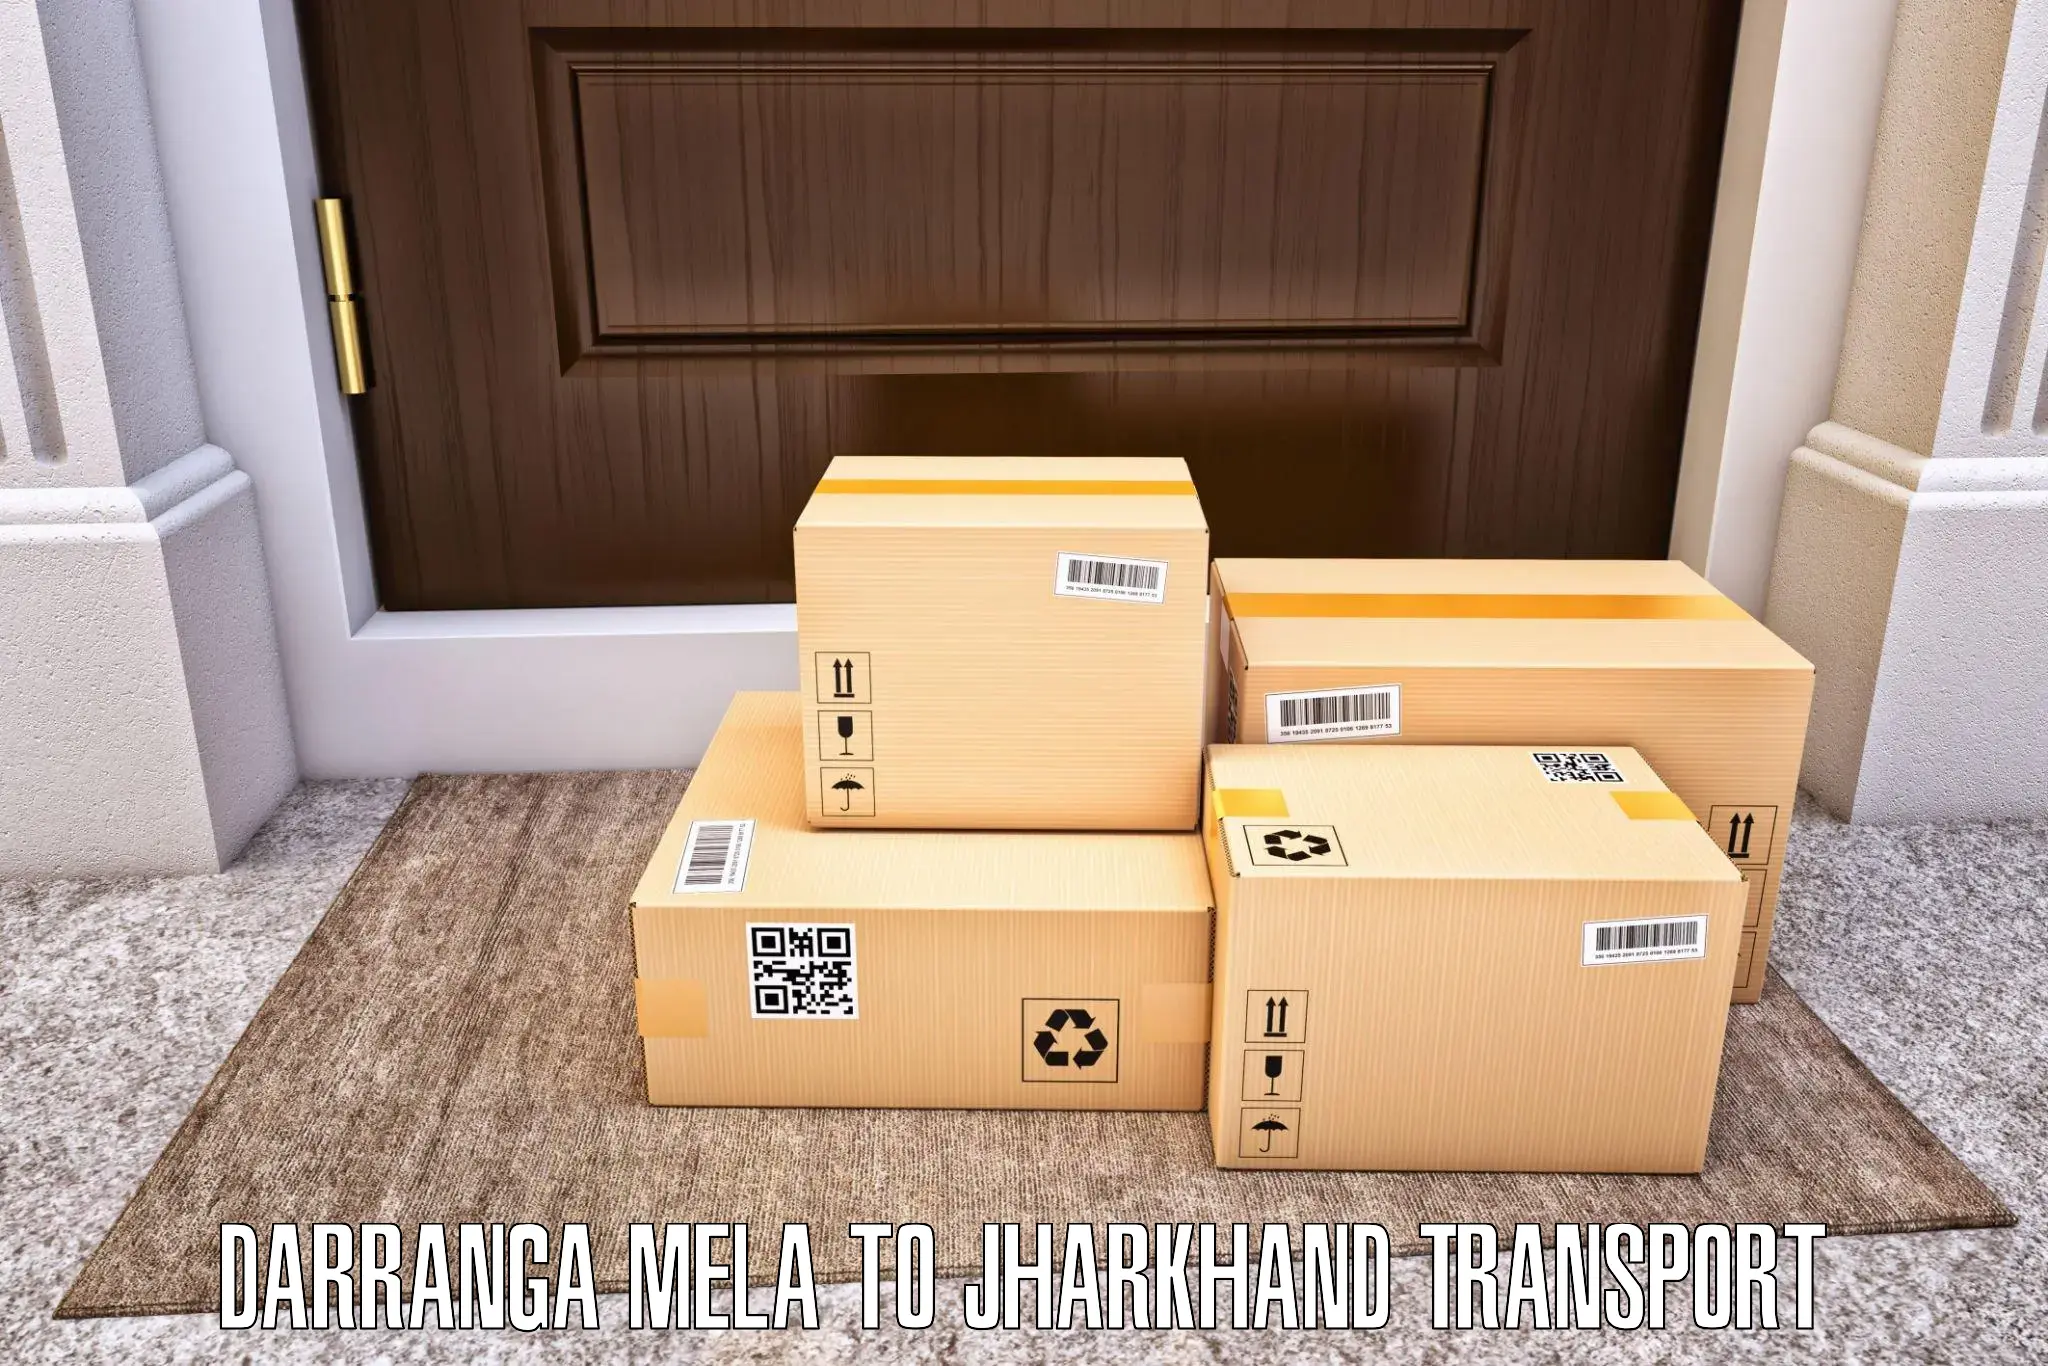 Transport in sharing Darranga Mela to Ormanjhi